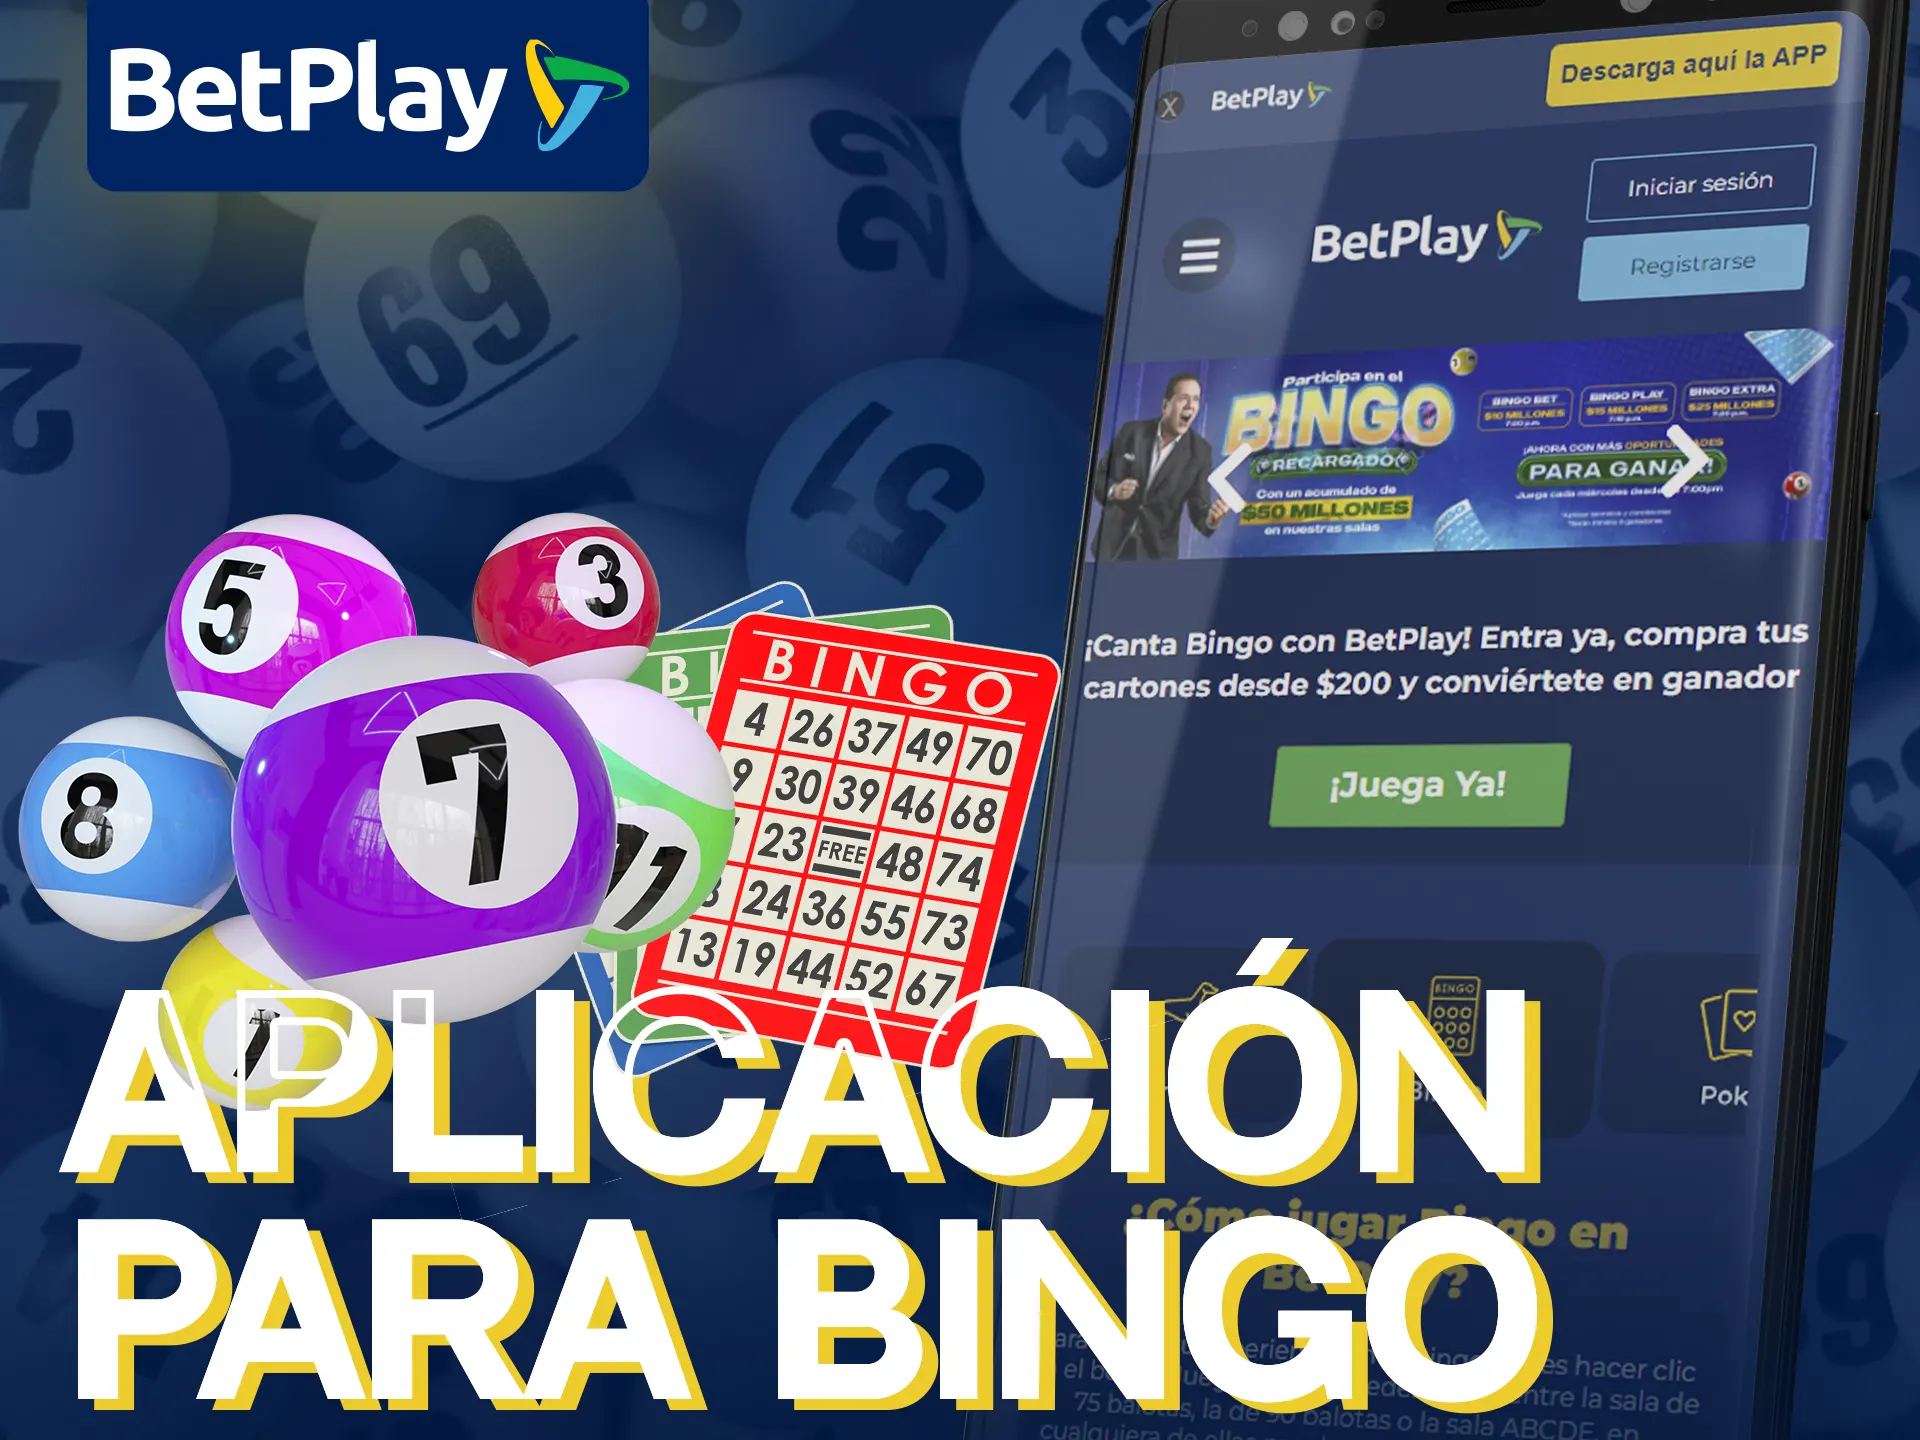 BetPlay Casino ofrece aplicación móvil para Bingo en Android e iOS.